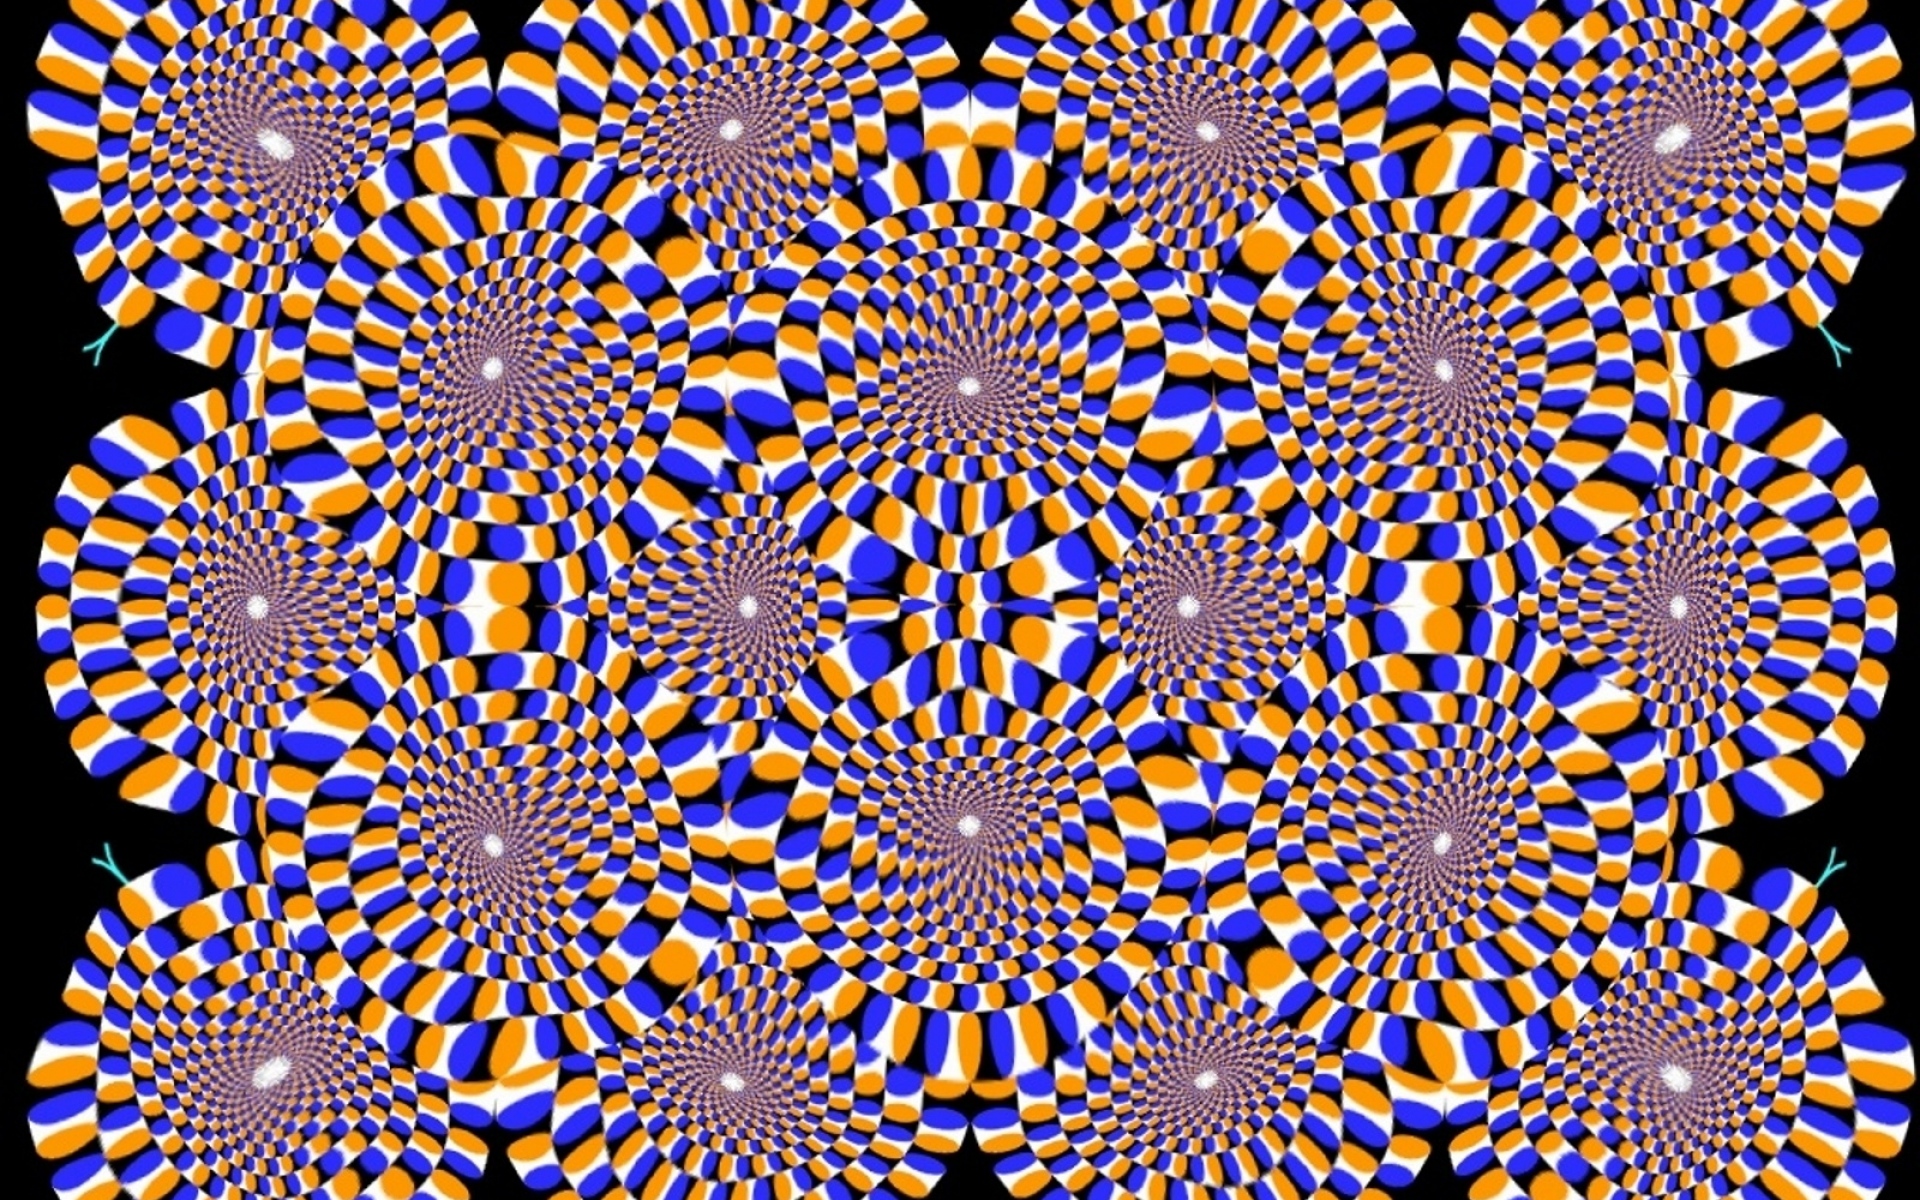 Движущиеся картинки для глаз. Акиоши Китаока иллюзия. Иллюзия Акиоши Китаока вращающийся змей. Оптические иллюзии стереокартинки. Оптические иллюзии для глаз стереограммы.